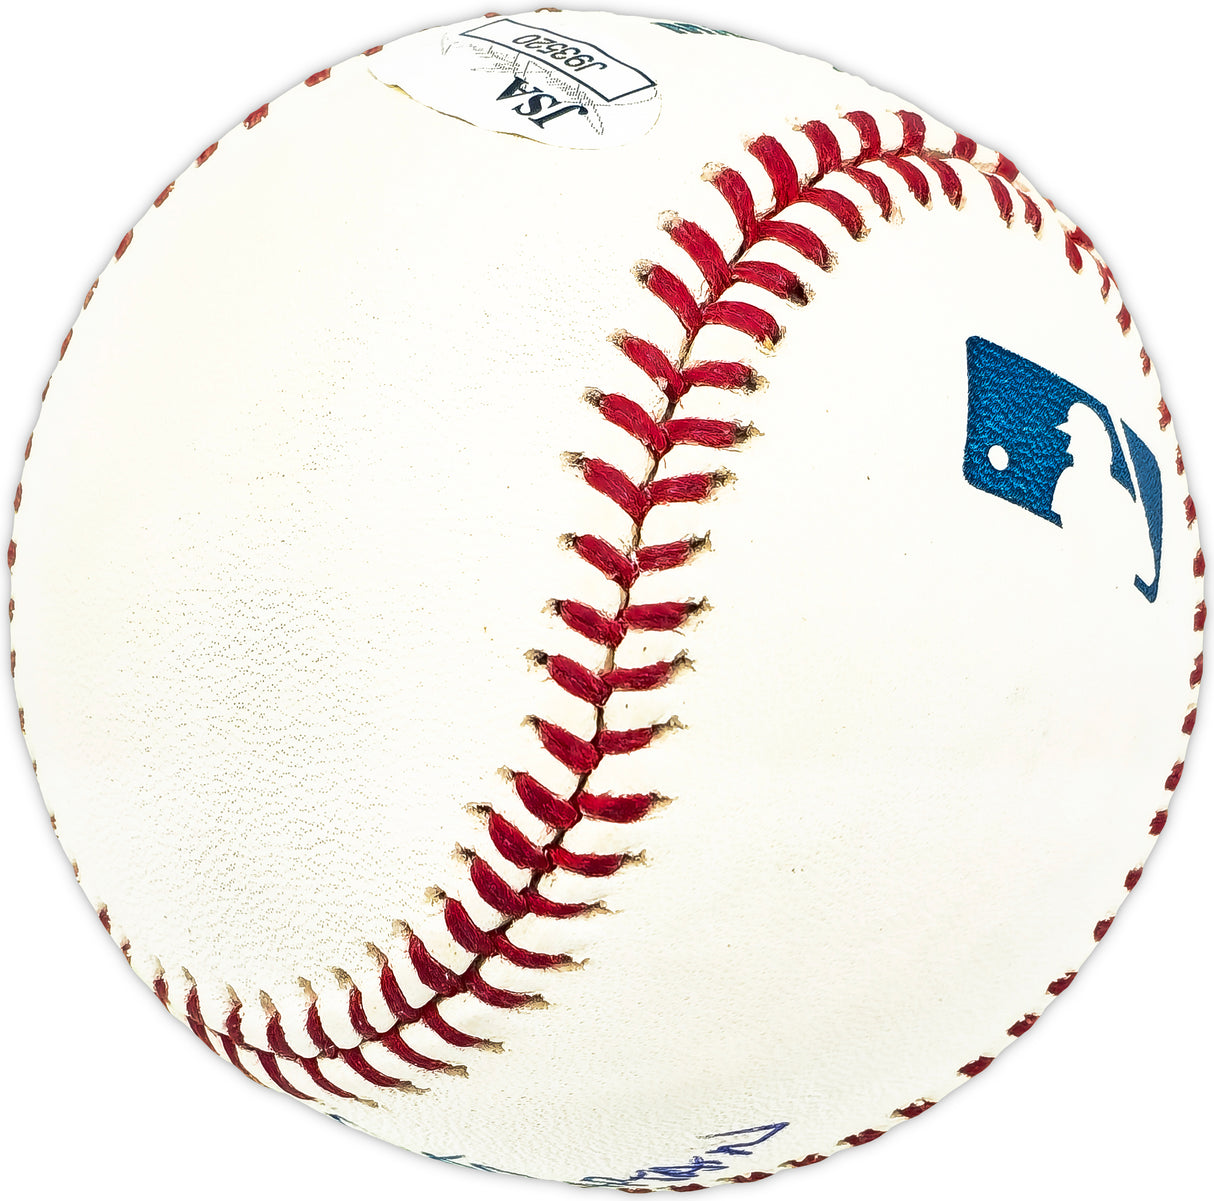 Graig Nettles Autographed Official MLB Baseball New York Yankees "Captain" JSA #J93520